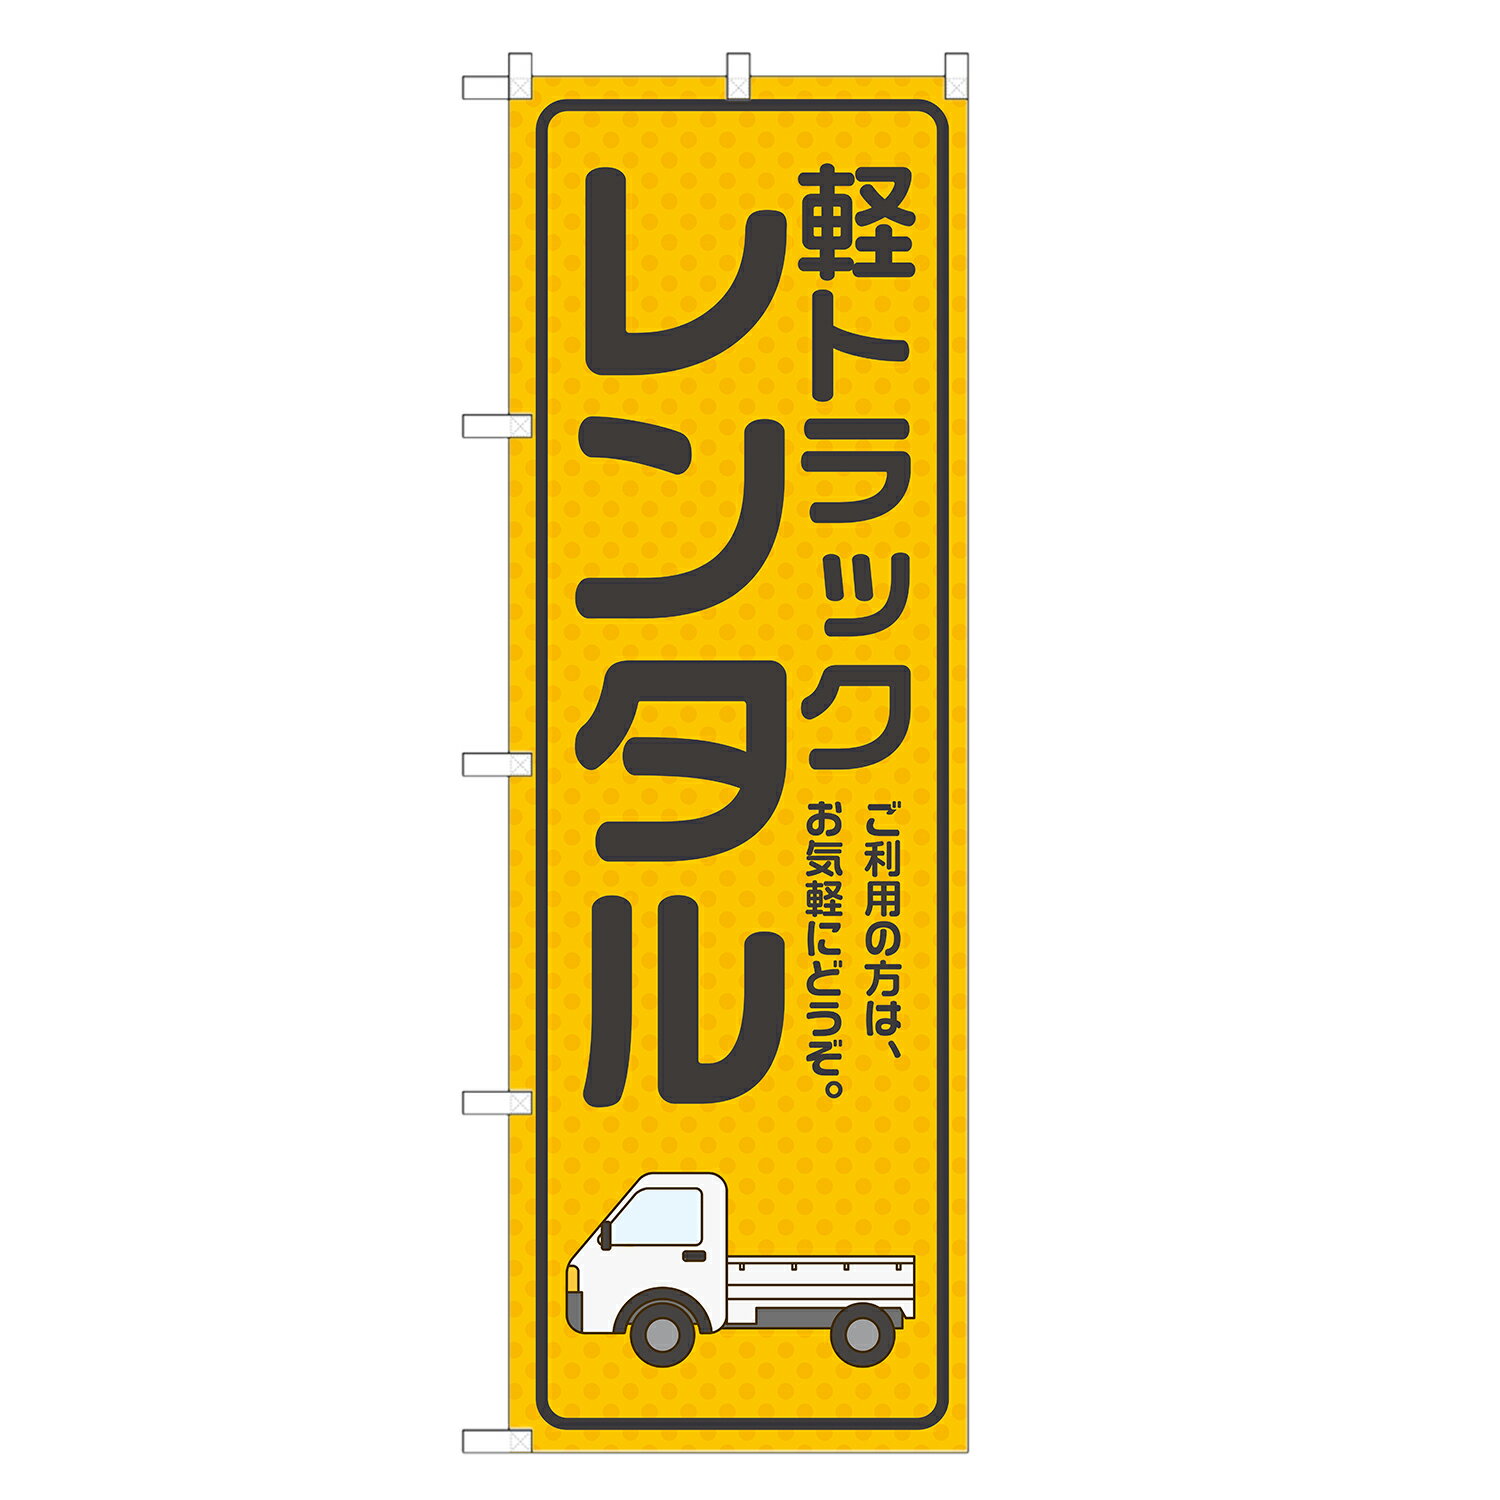 のぼり旗 軽トラック レンタル 四方三巻縫製 S26-0038B-R